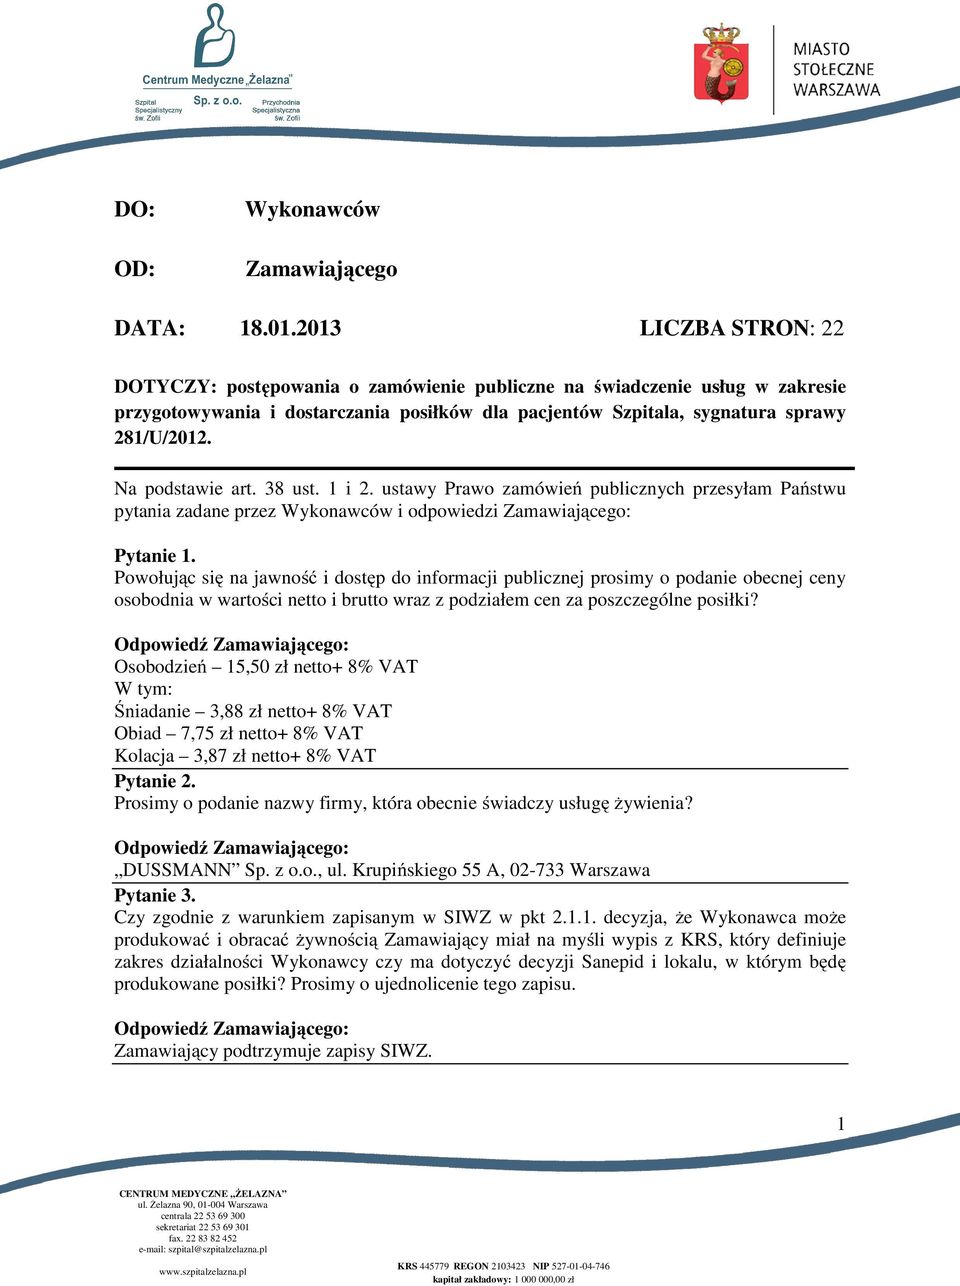 KRS REGON NIP kapitał zakładowy: ,00 zł. - PDF Free Download